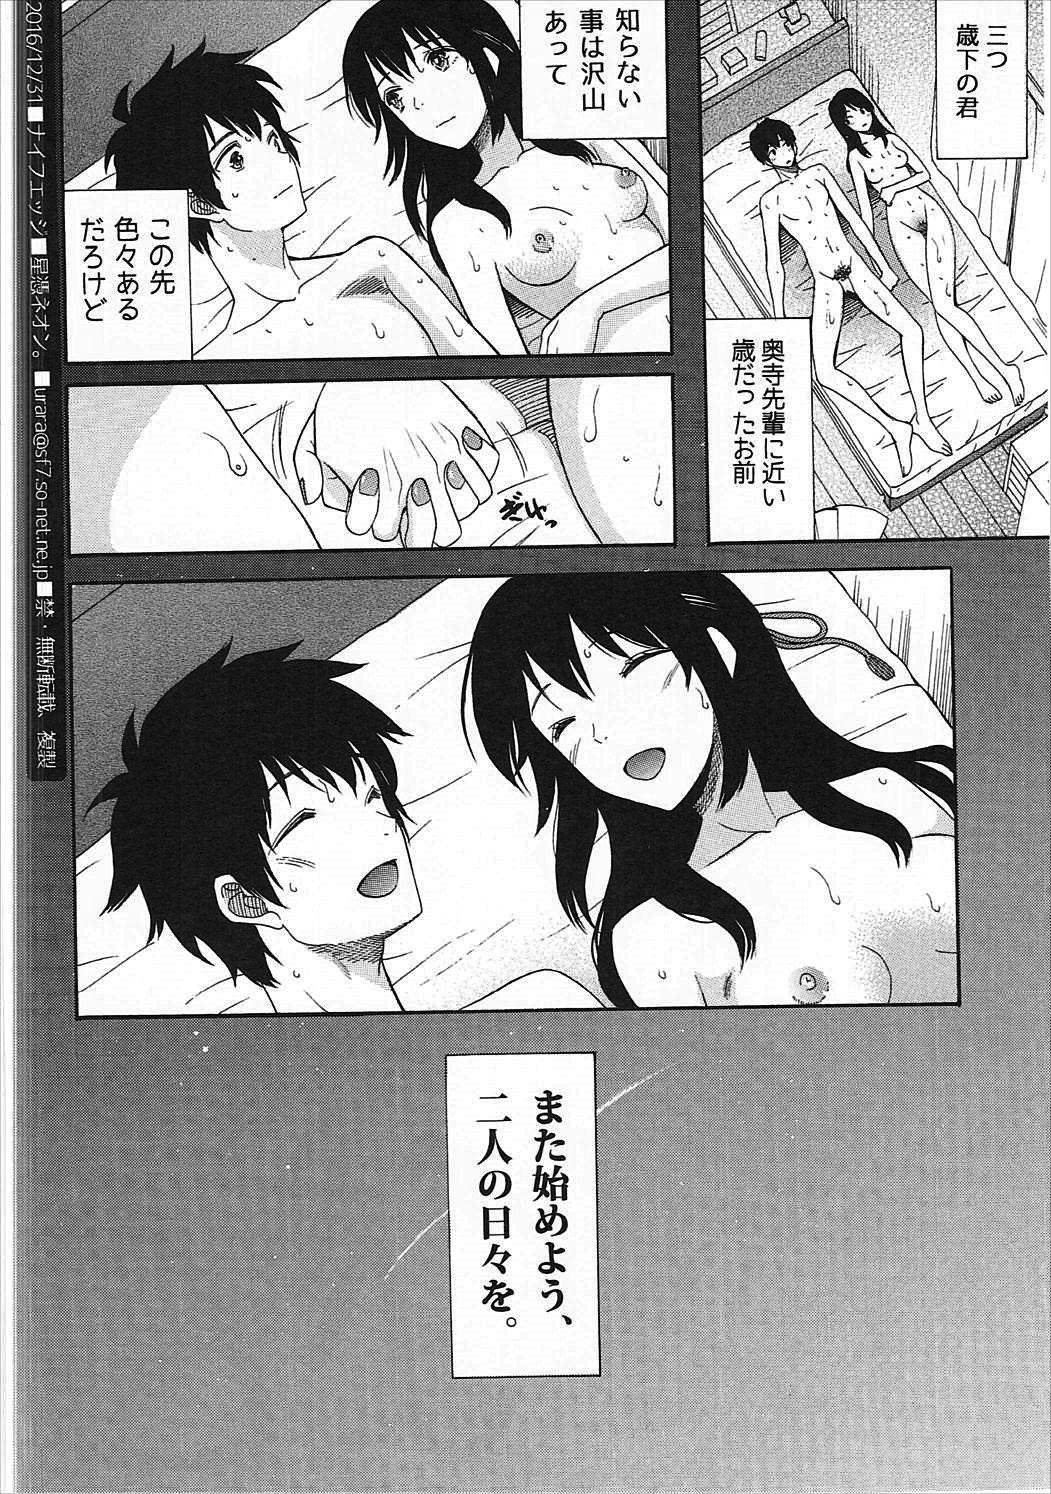 Porn Futari no Hibi o. - Kimi no na wa. Chaturbate - Page 17